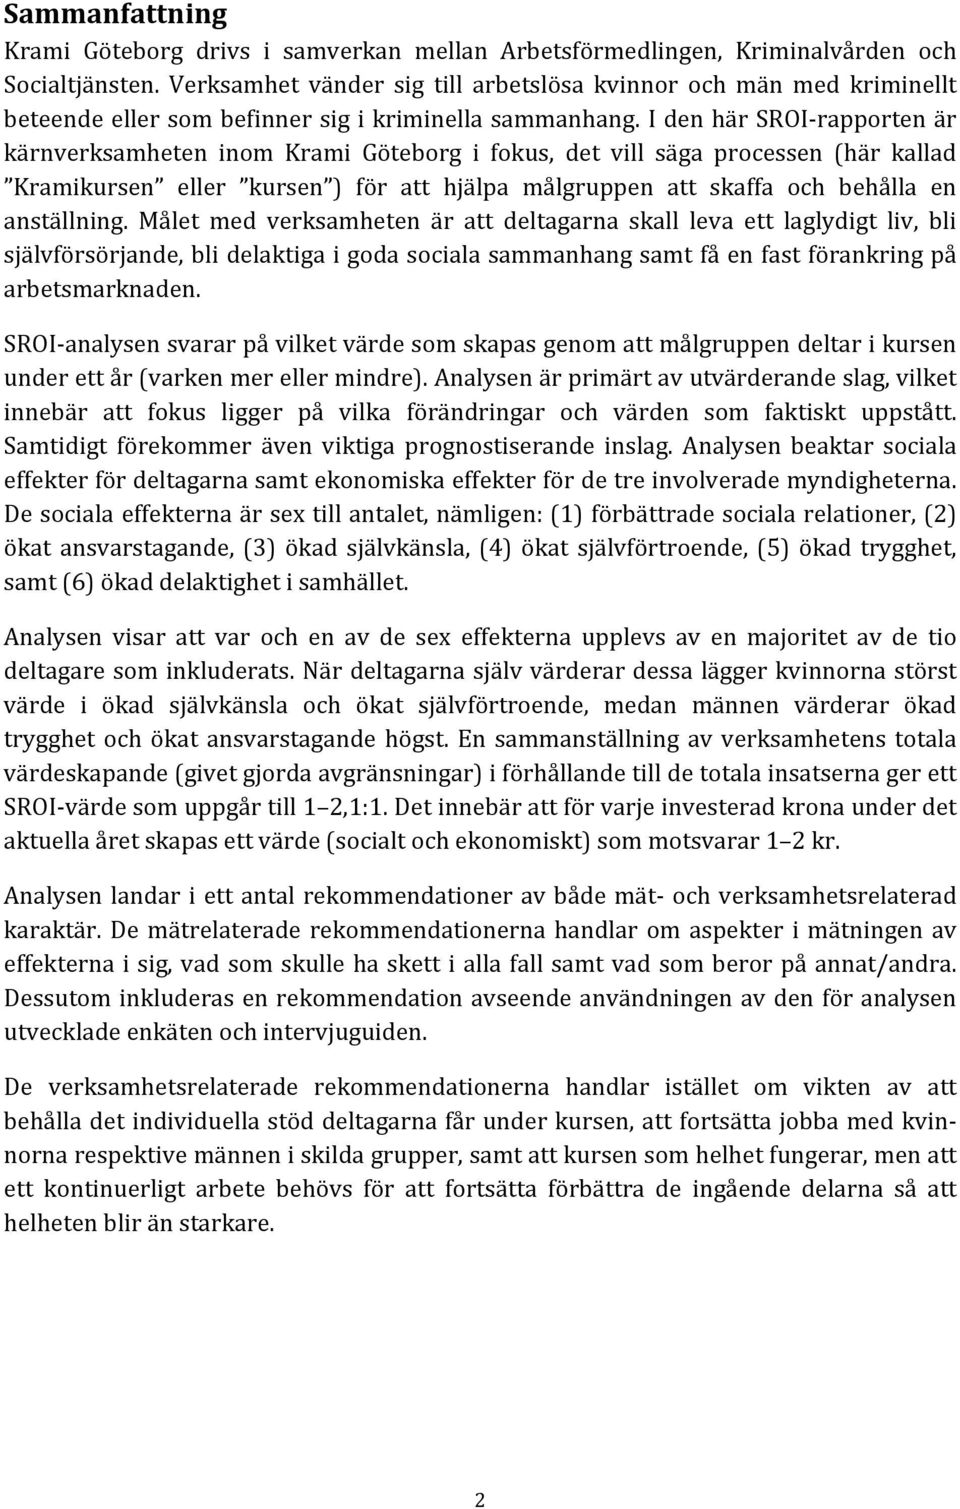 I den här SROI rapporten är kärnverksamheten inom Krami Göteborg i fokus, det vill säga processen (här kallad Kramikursen eller kursen ) för att hjälpa målgruppen att skaffa och behålla en